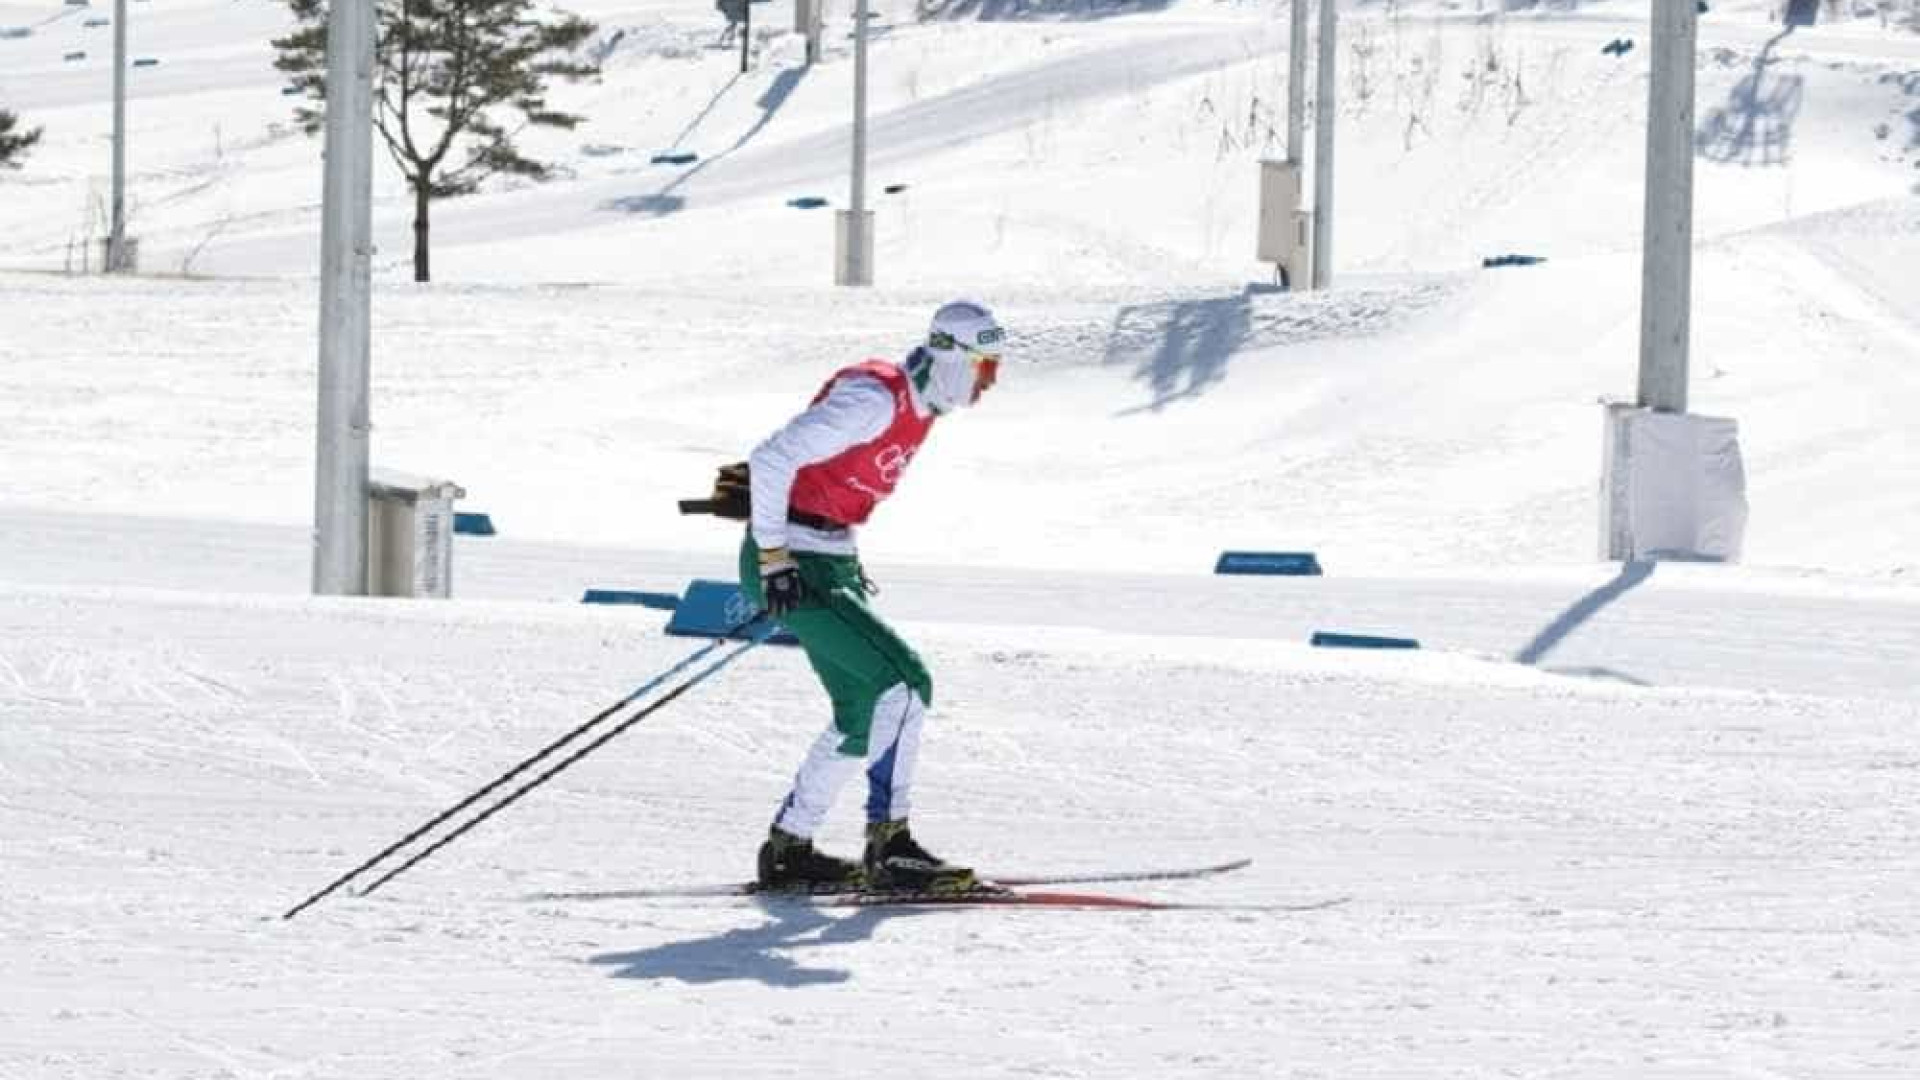 Esquiador brasileiro saiu da favela para competir na Olimpíada